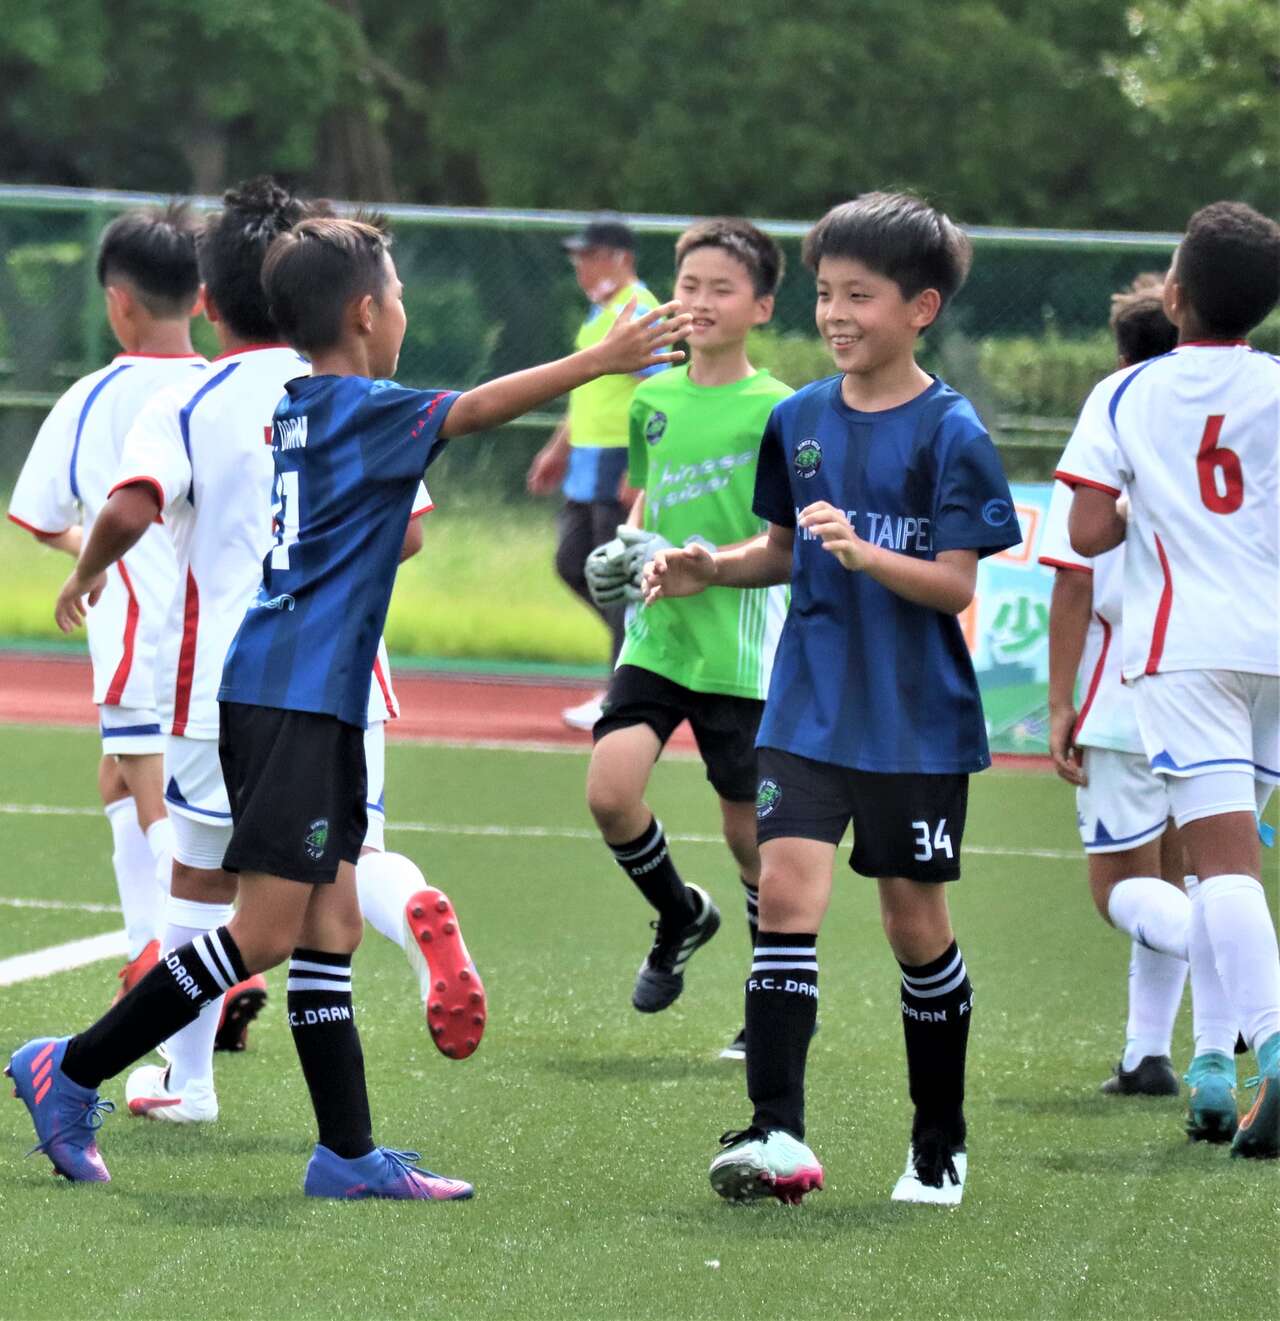 大安足球俱樂部 藍U10靠著唐煦(34號)踢進致勝球終場以2比1奪冠。大會提供